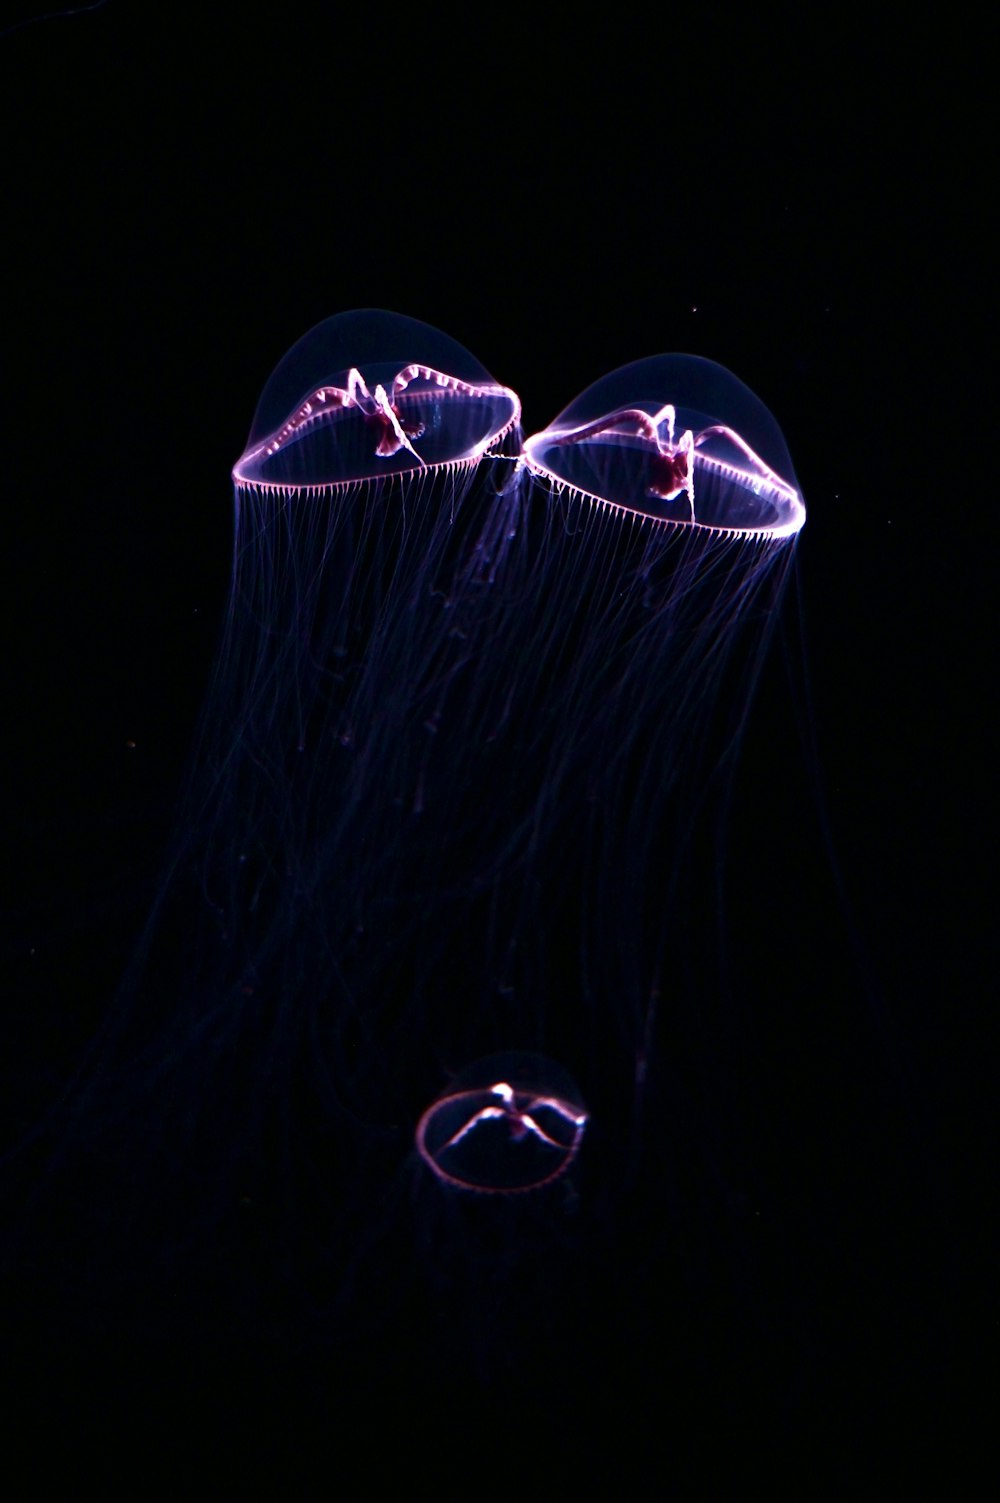 Un par de medusas flotando en la oscuridad